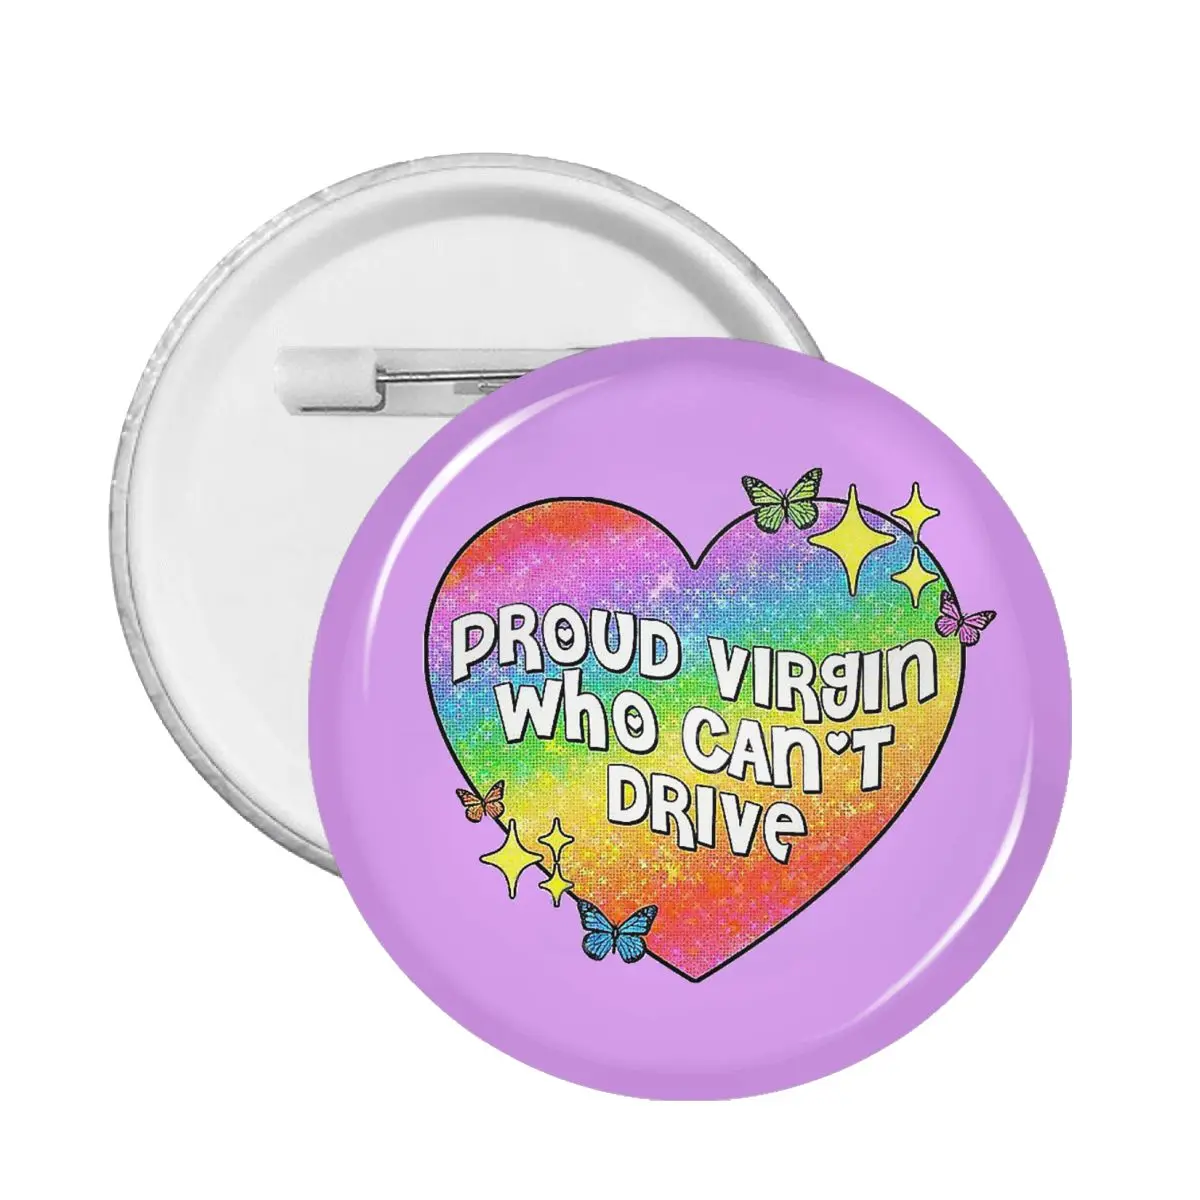 

Значок с надписью Proud Virgin Who Can't Drive для одежды, значки, броши, металлические булавки для влюбленных